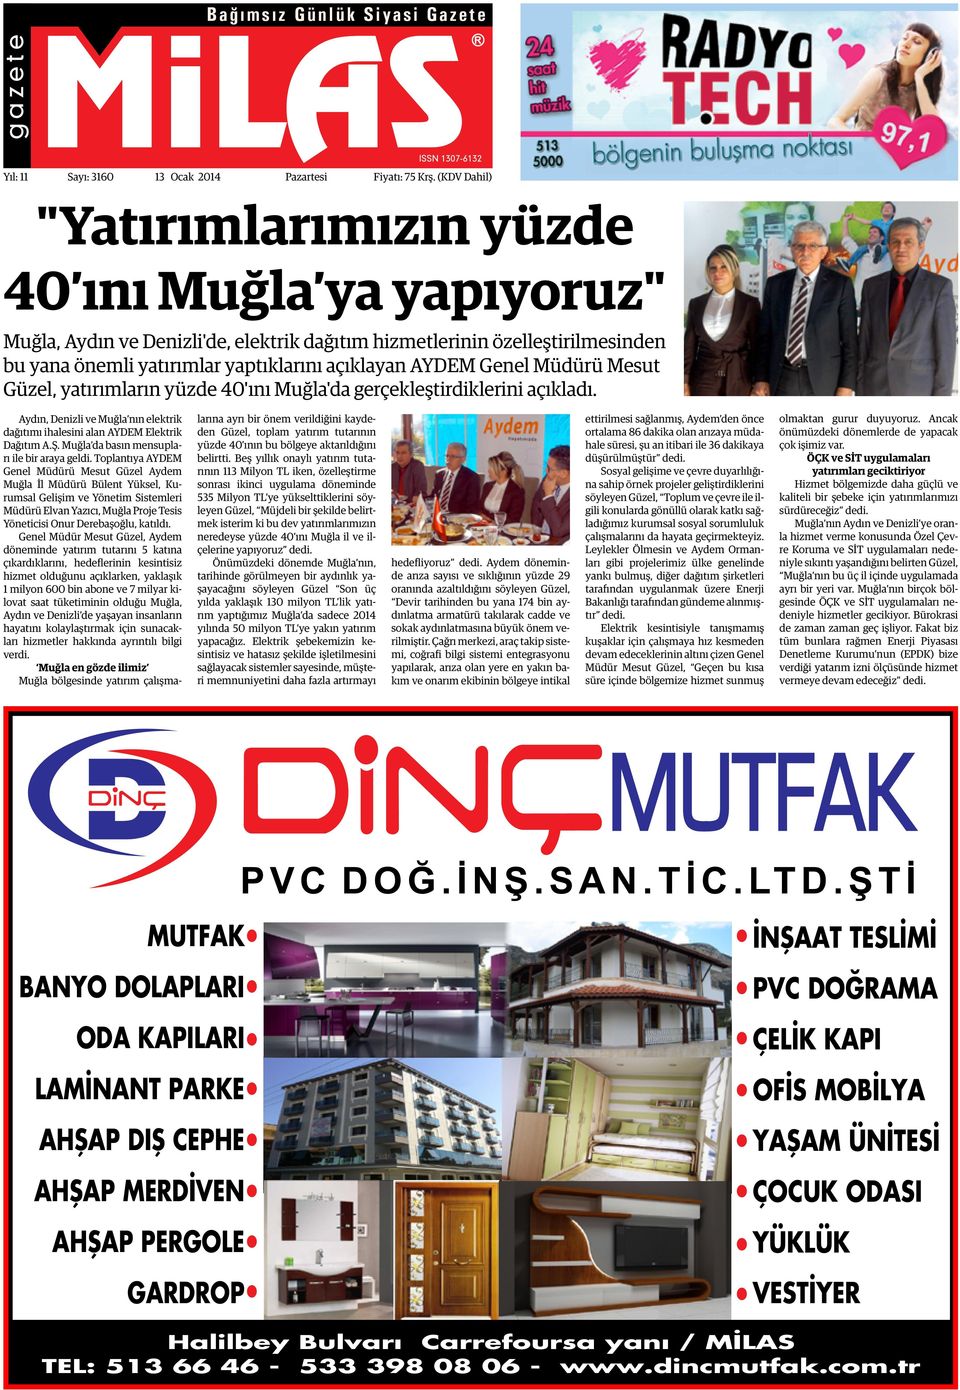 Genel Müdürü Mesut Güzel, yatırımların yüzde 40'ını Muğla'da gerçekleştirdiklerini açıkladı. Aydın, Denizli ve Muğla nın elektrik dağıtımı ihalesini alan AYDEM Elektrik Dağıtım A.Ş.